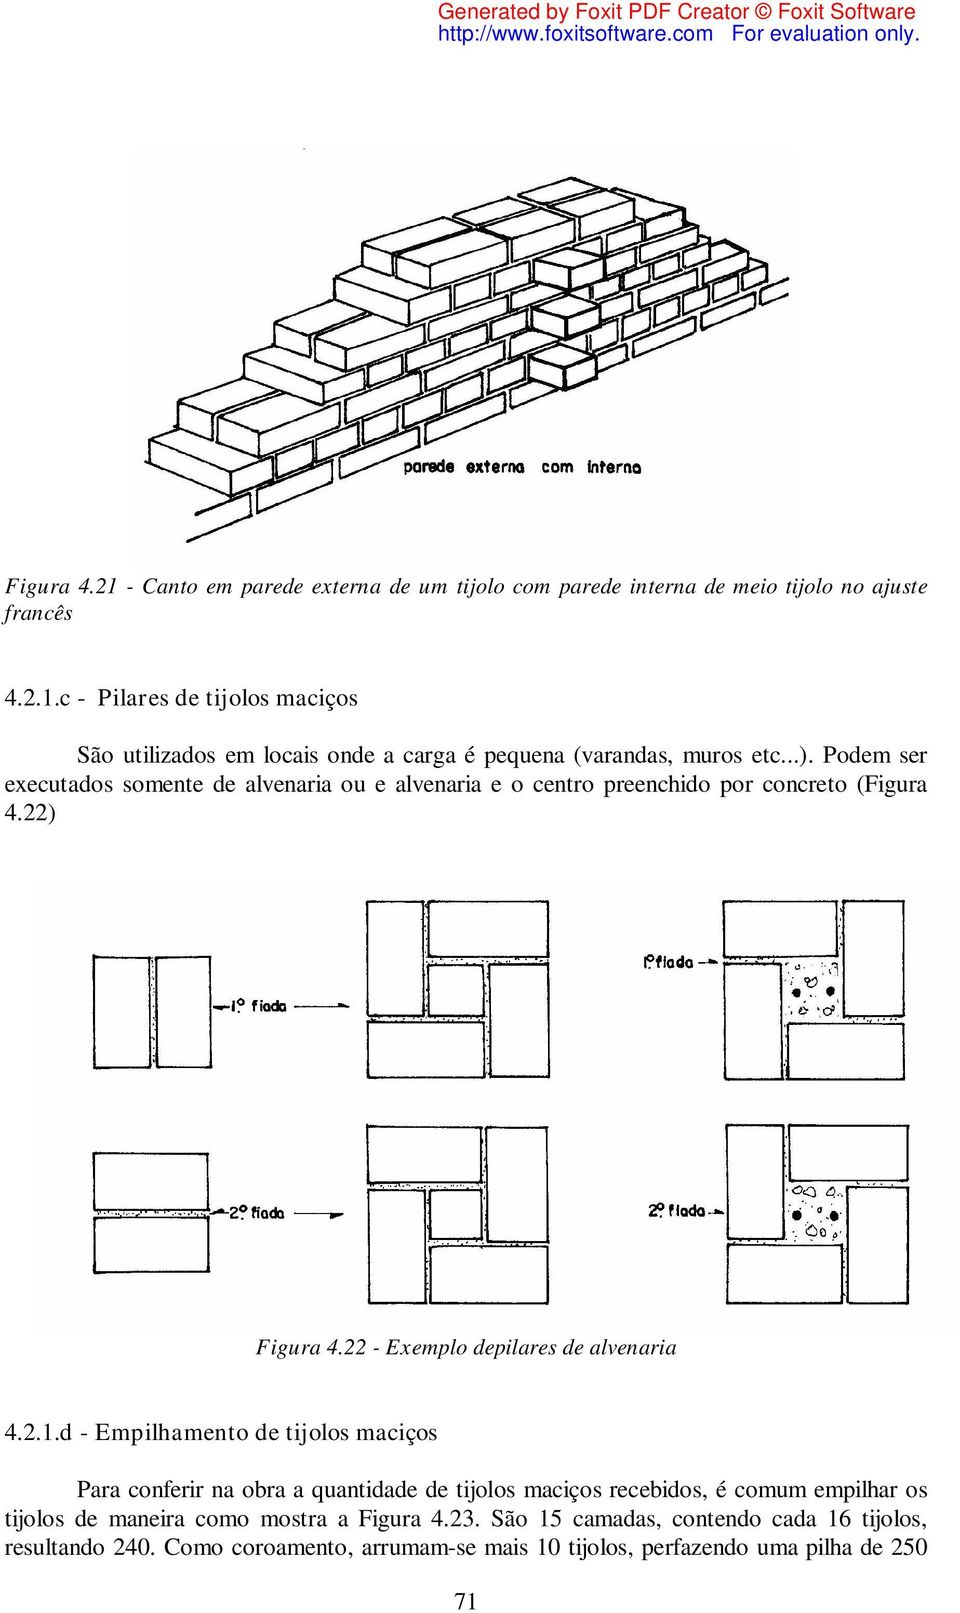 d - Empilhamento de tijolos maciços Para conferir na obra a quantidade de tijolos maciços recebidos, é comum empilhar os tijolos de maneira como mostra a Figura 4.23.